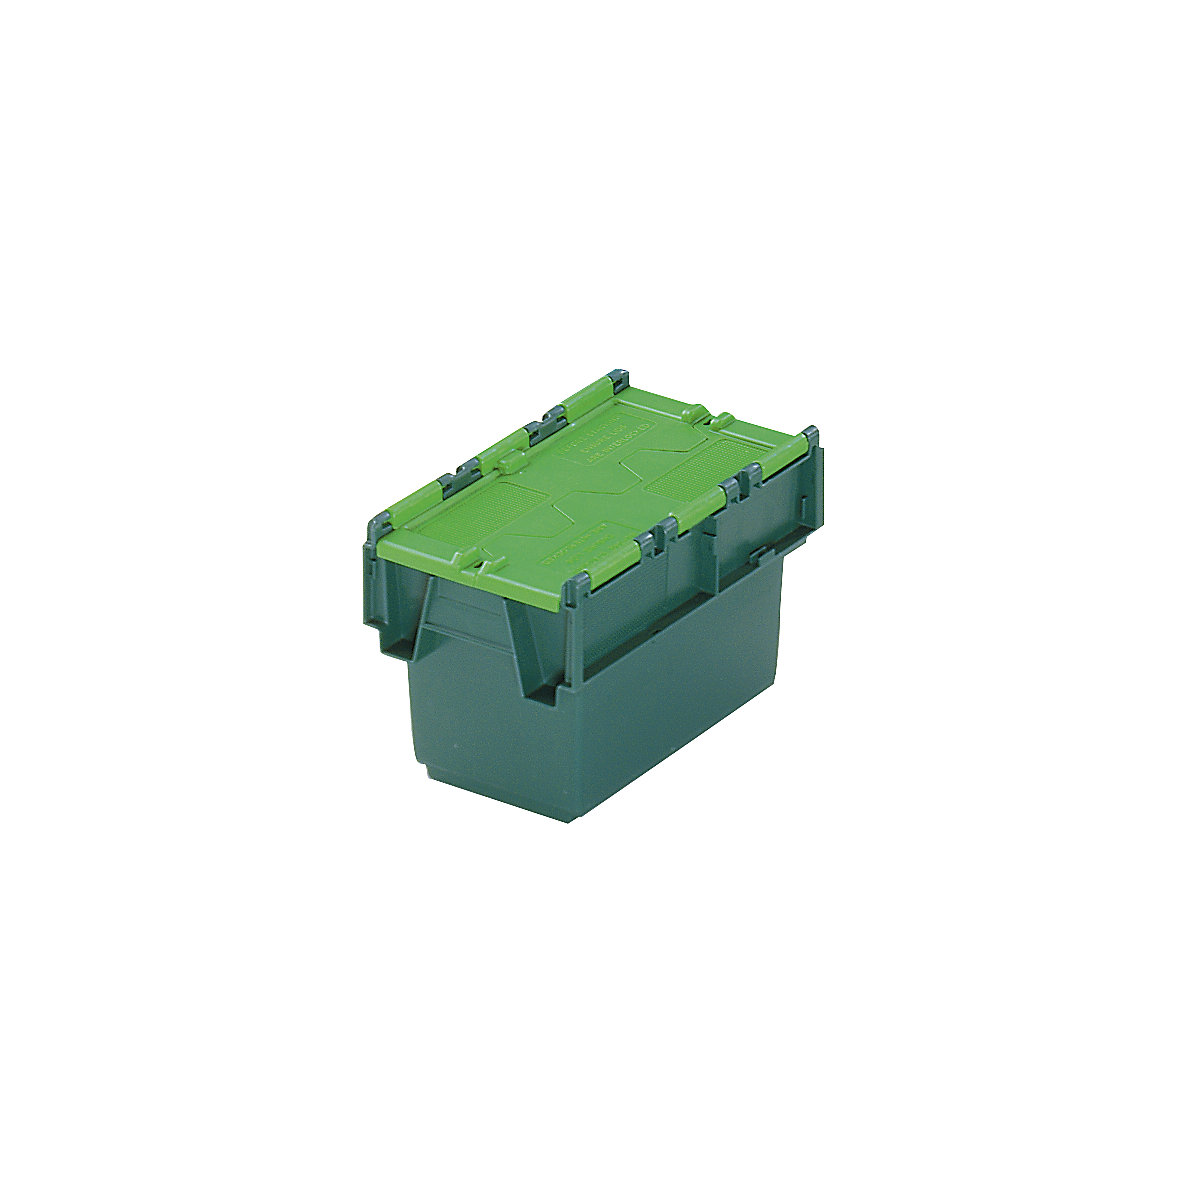 Pojemnik wielokrotnego użytku do ustawiania w stos ze składaną pokrywą, poj. 6 l, dł. x szer. x wys. 300 x 200 x 200 mm, zielony